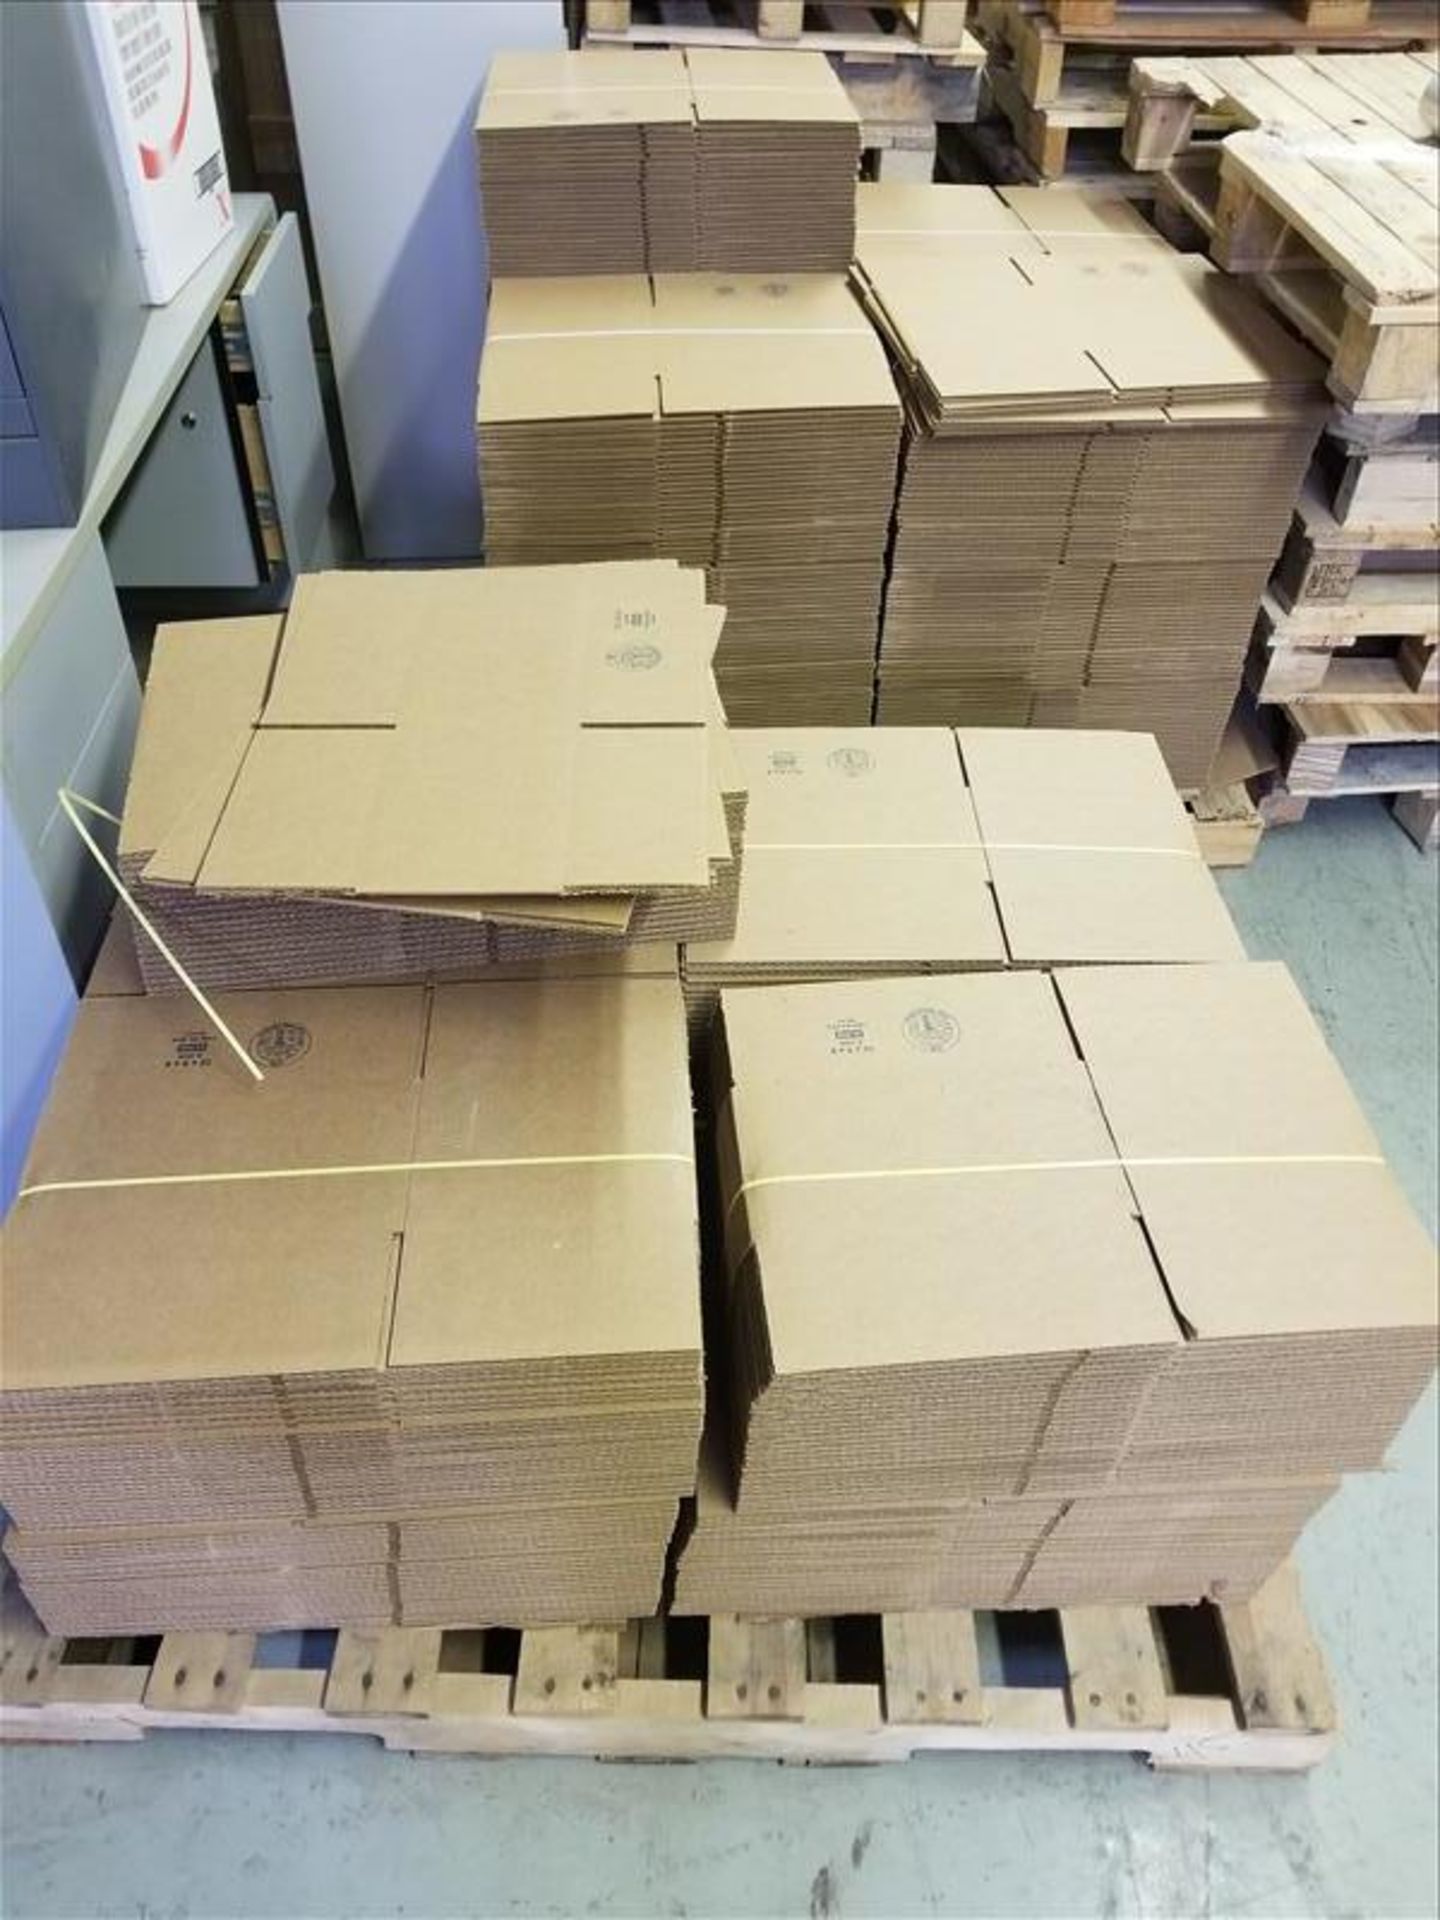 (3) skids of Cardboard